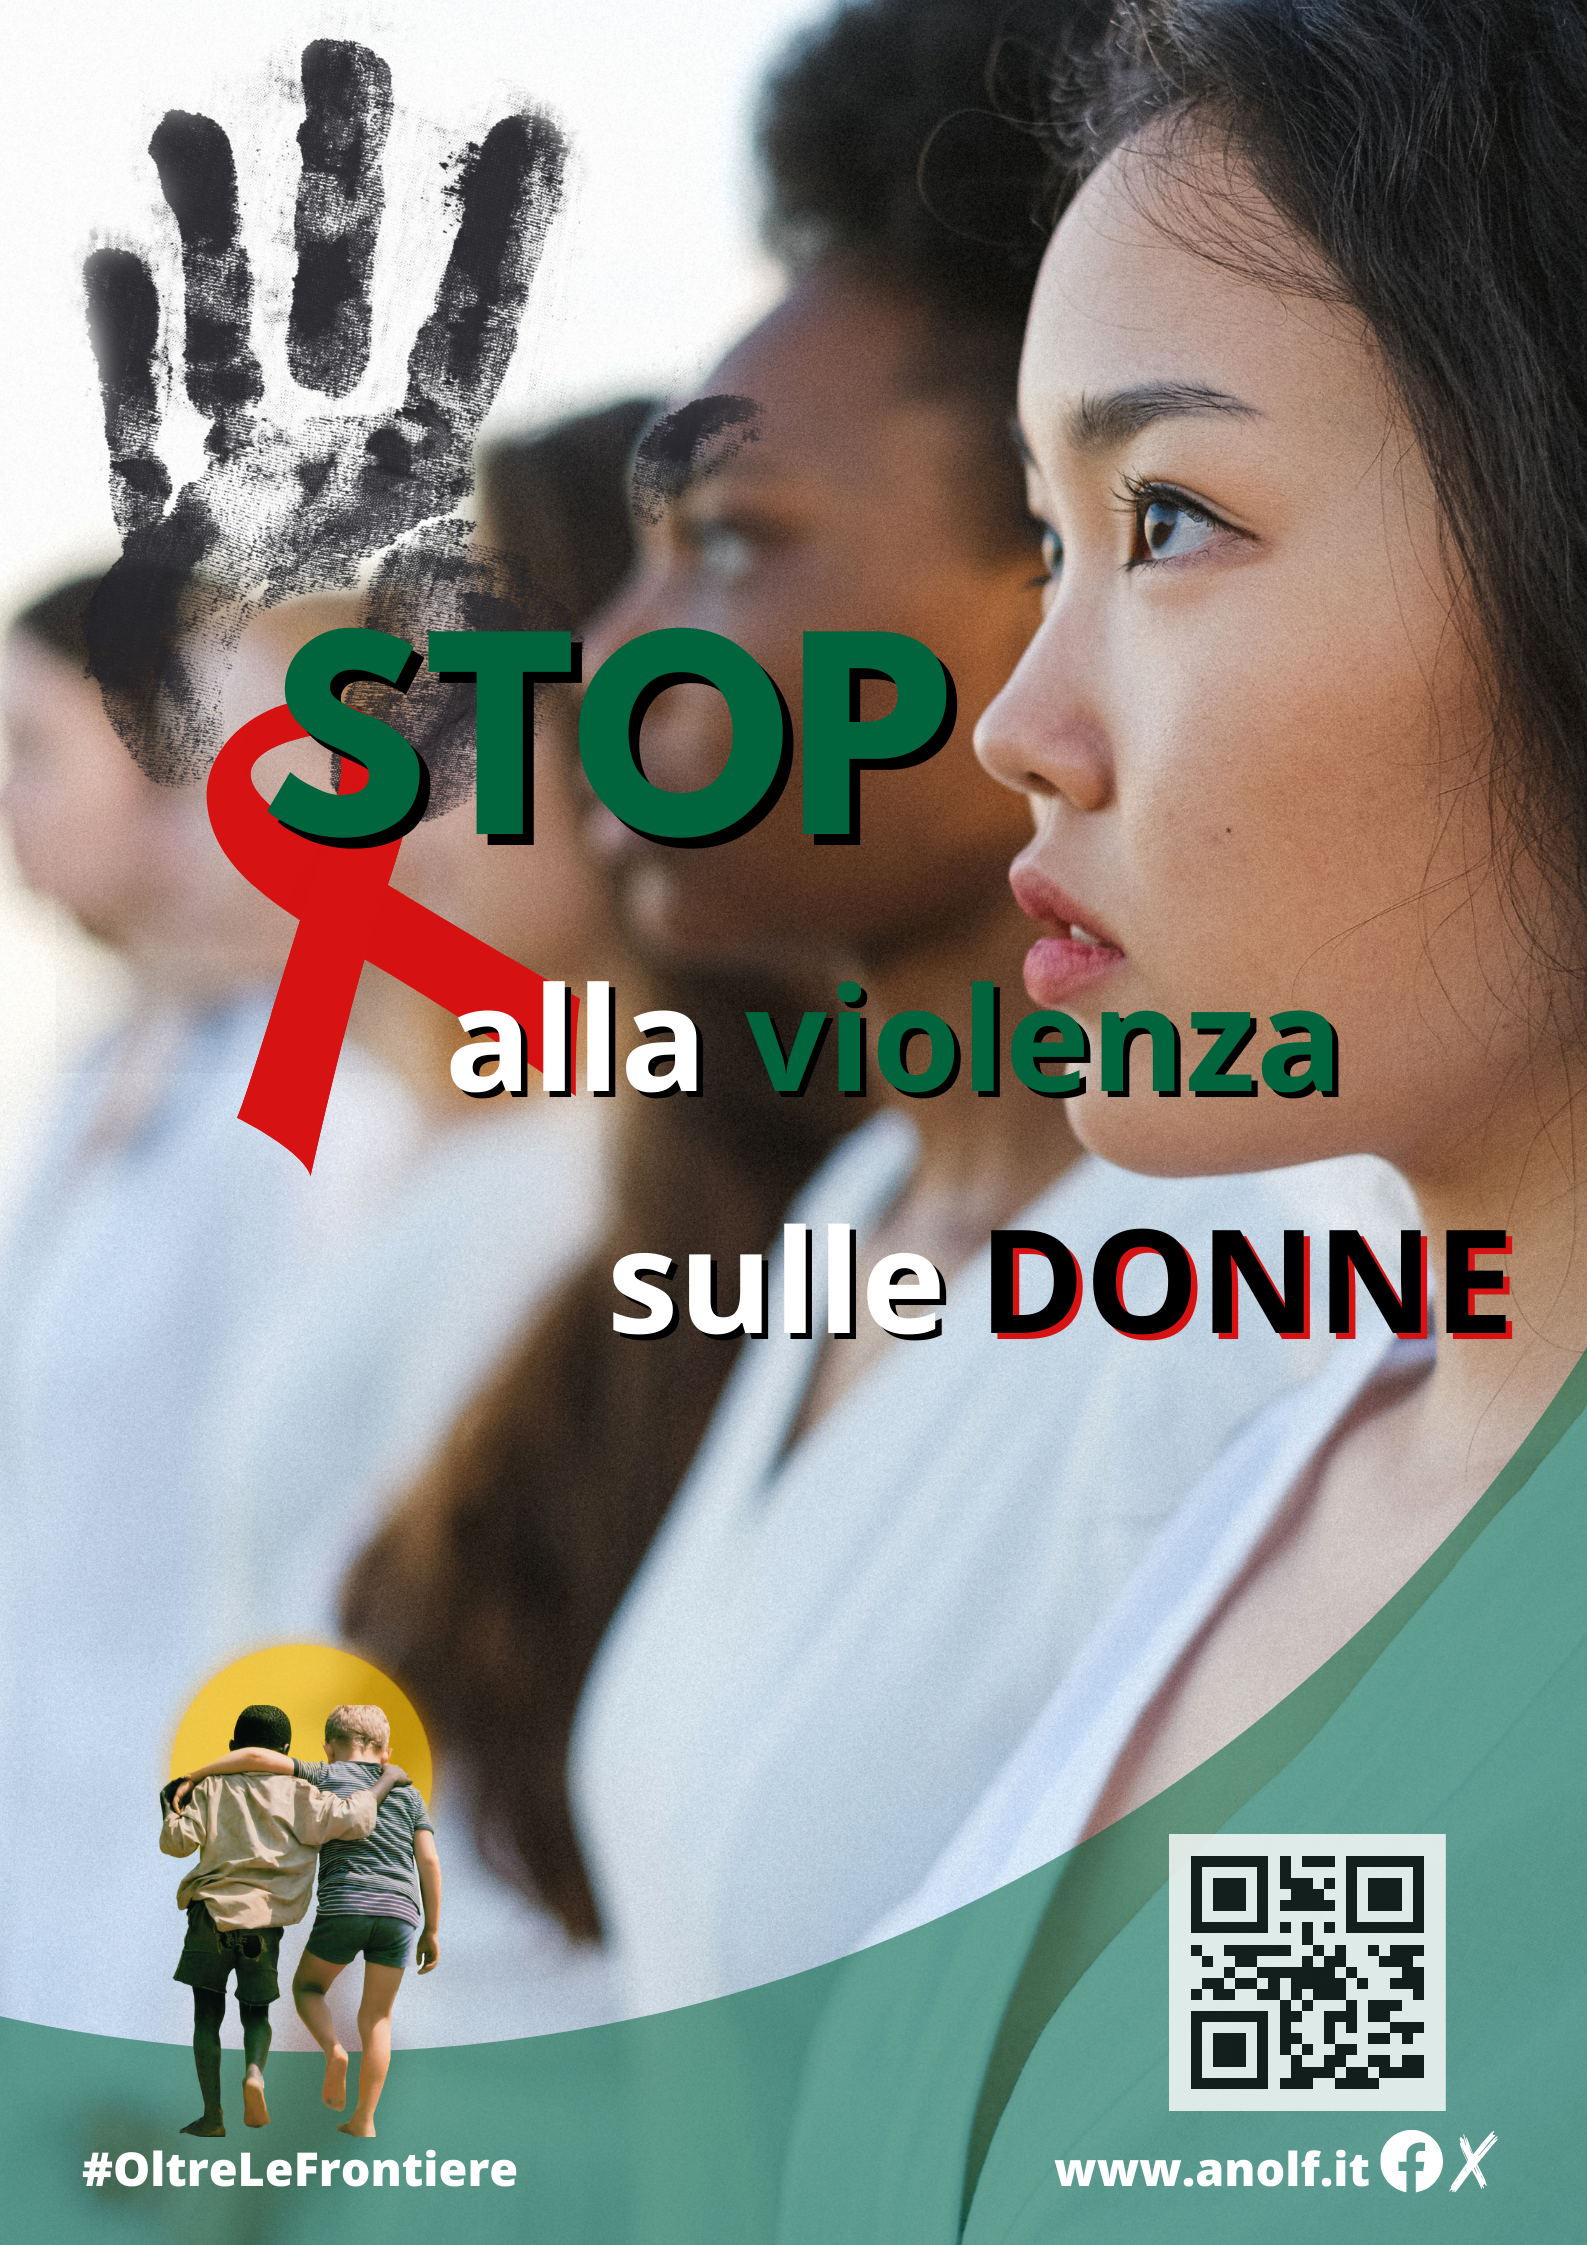 ANOLF – 25 novembre “Giornata Internazionale contro la violenza sulle donne”